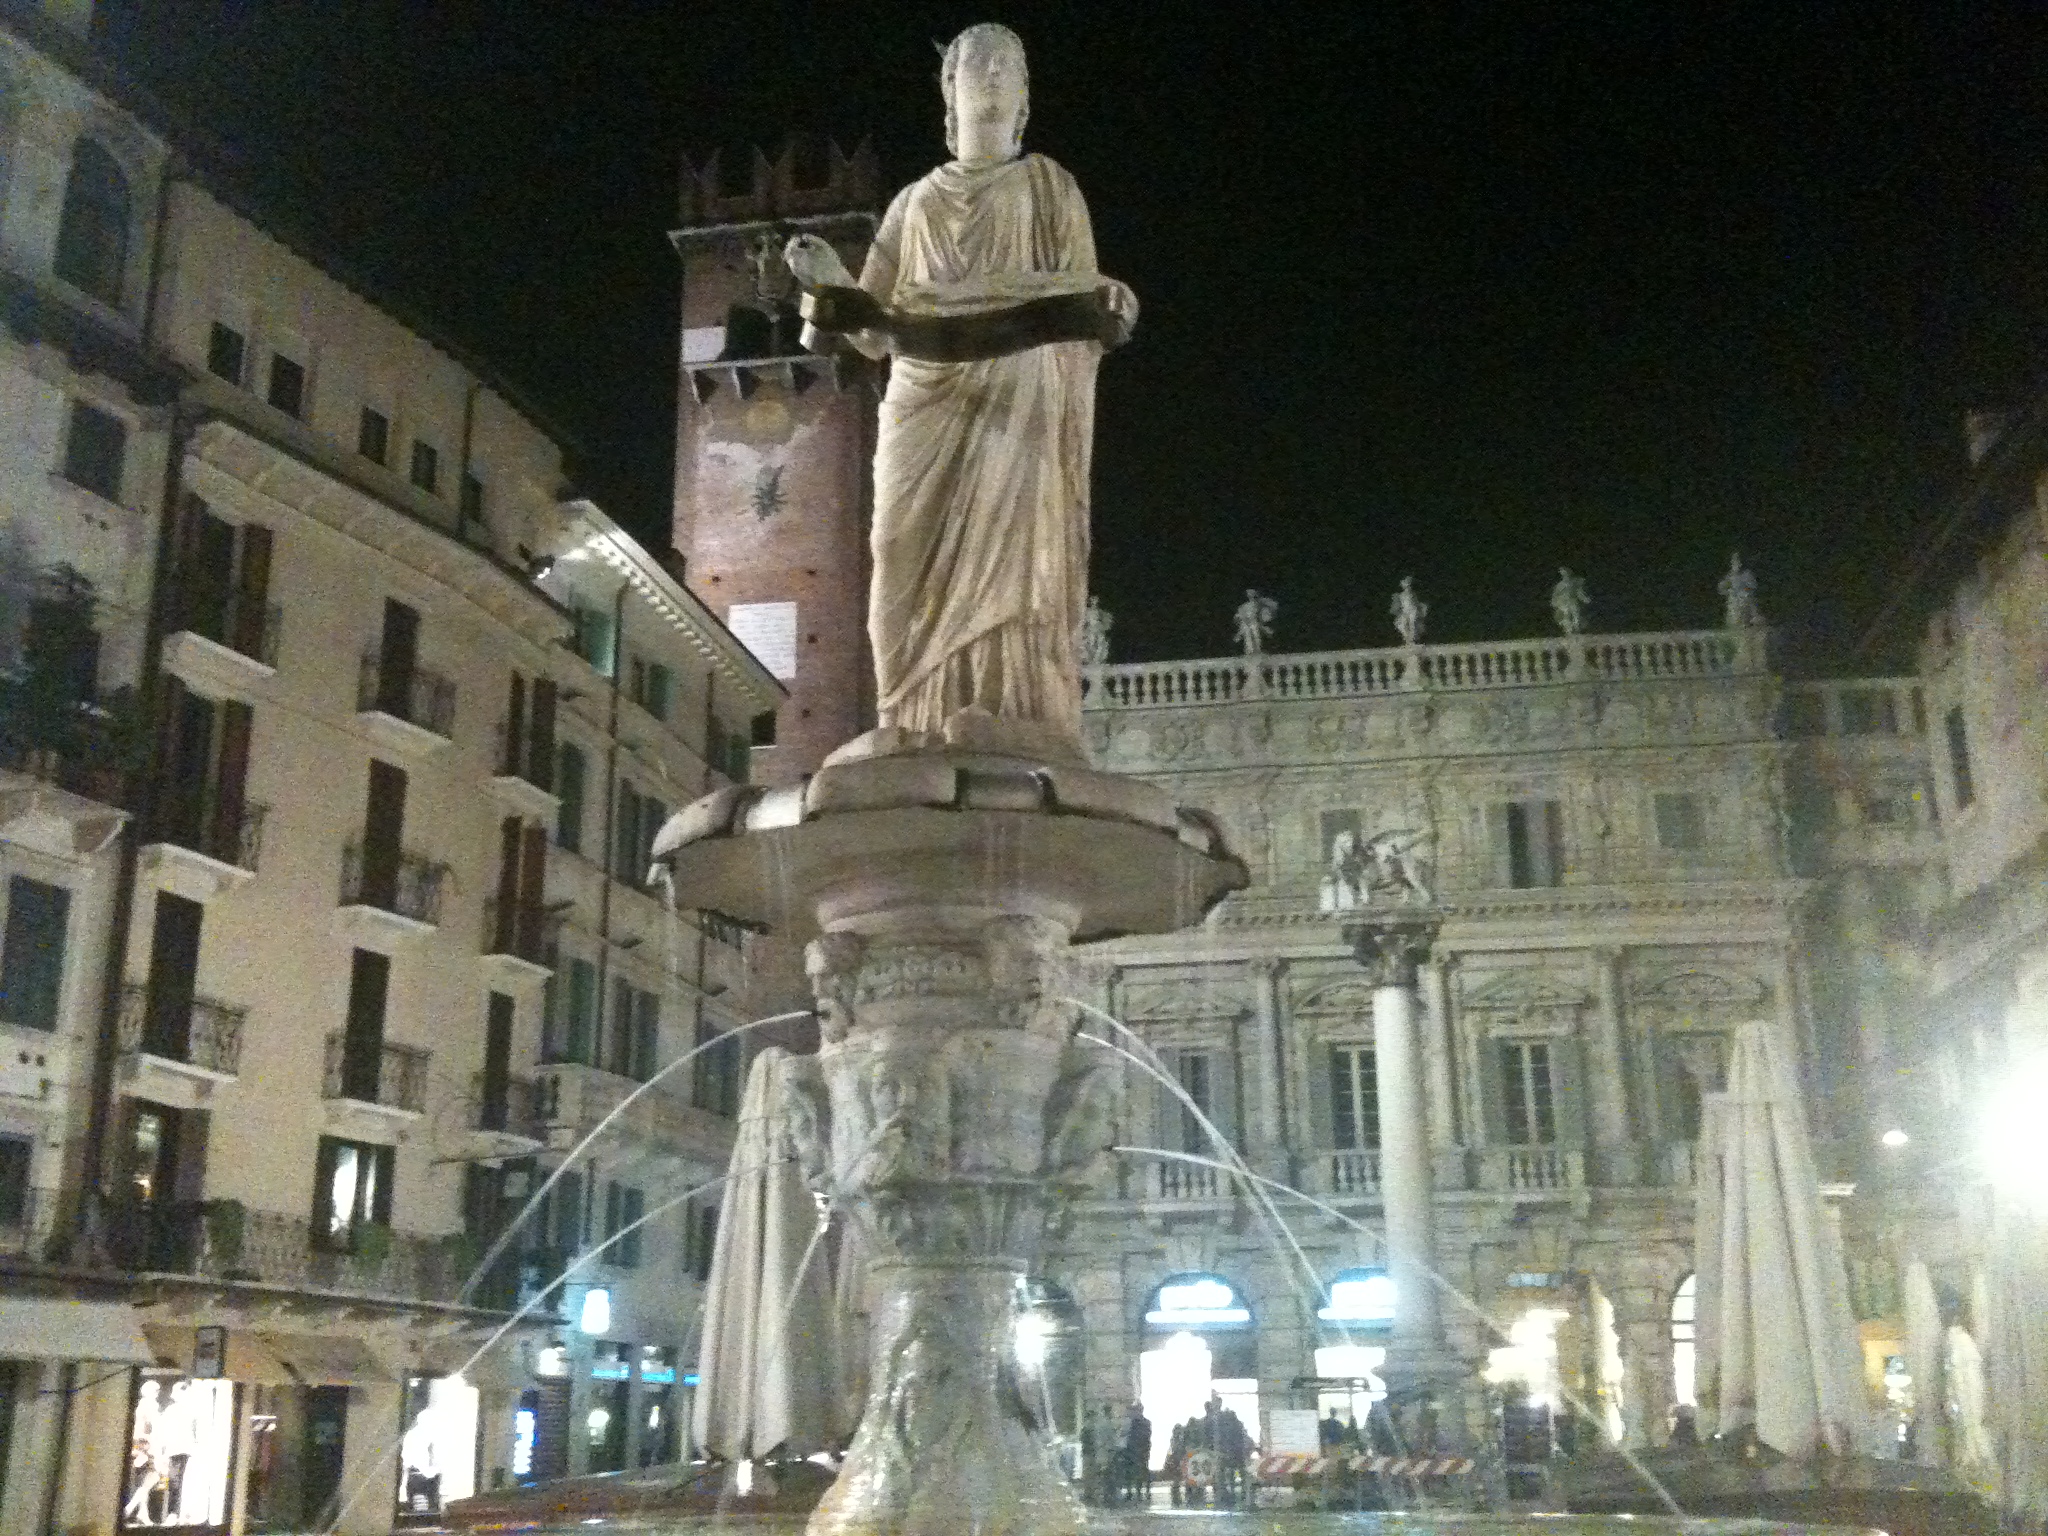 Piazza Erbe Verona